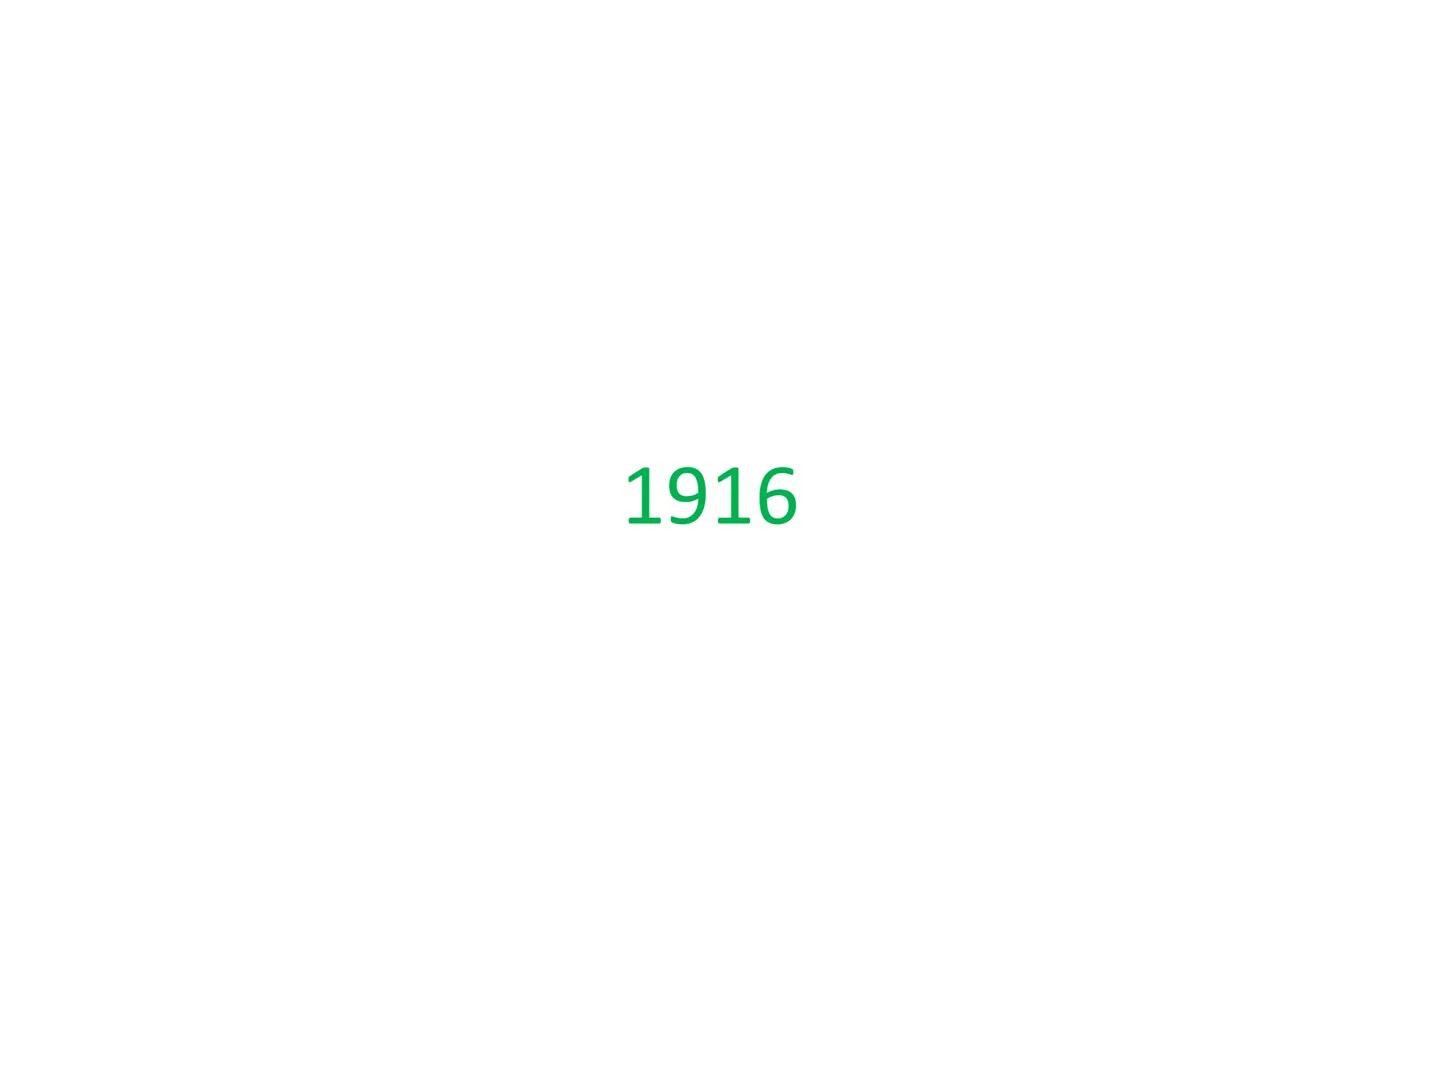 Histoire
Dates repères 1ère Série
/29 1914-1918 Grande Guerre
(1ère Guerre Mondiale) 1916 Bataille de Verdun 1917 Révolution Russe 11 novemb